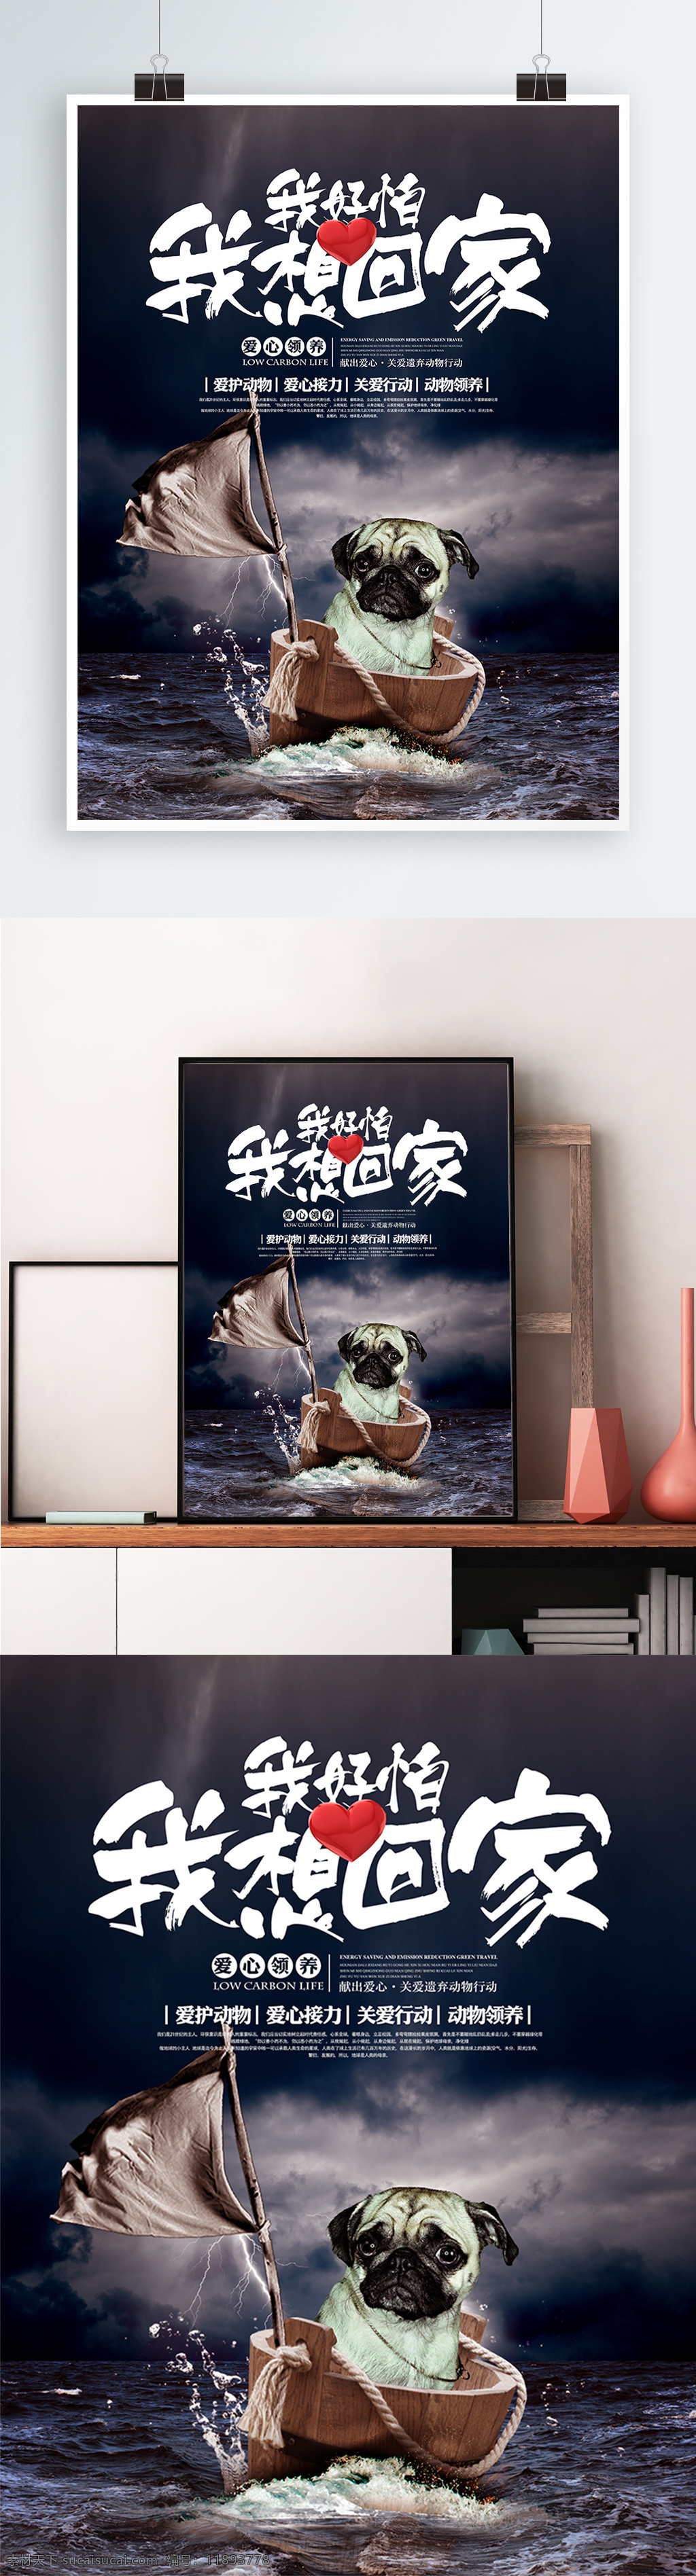 关爱 动物 爱心 领养 公益 宣传海报 展板 关爱动物 宣传 海报